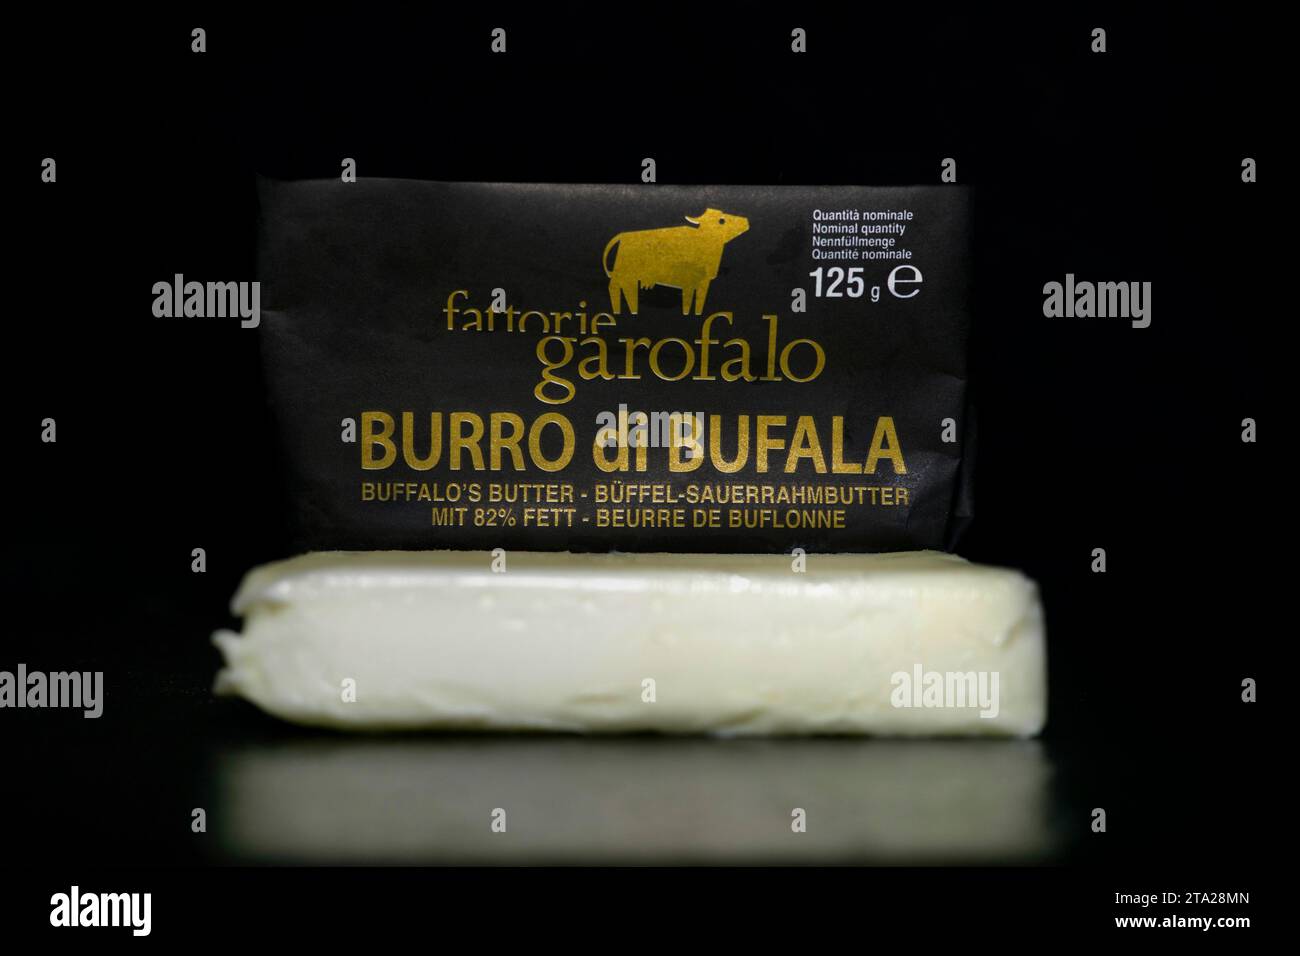 Burro di Bufala, beurre fabriqué à partir de 100 pour cent de lait de buffle, produit en Italie, photographie alimentaire avec fond noir Banque D'Images